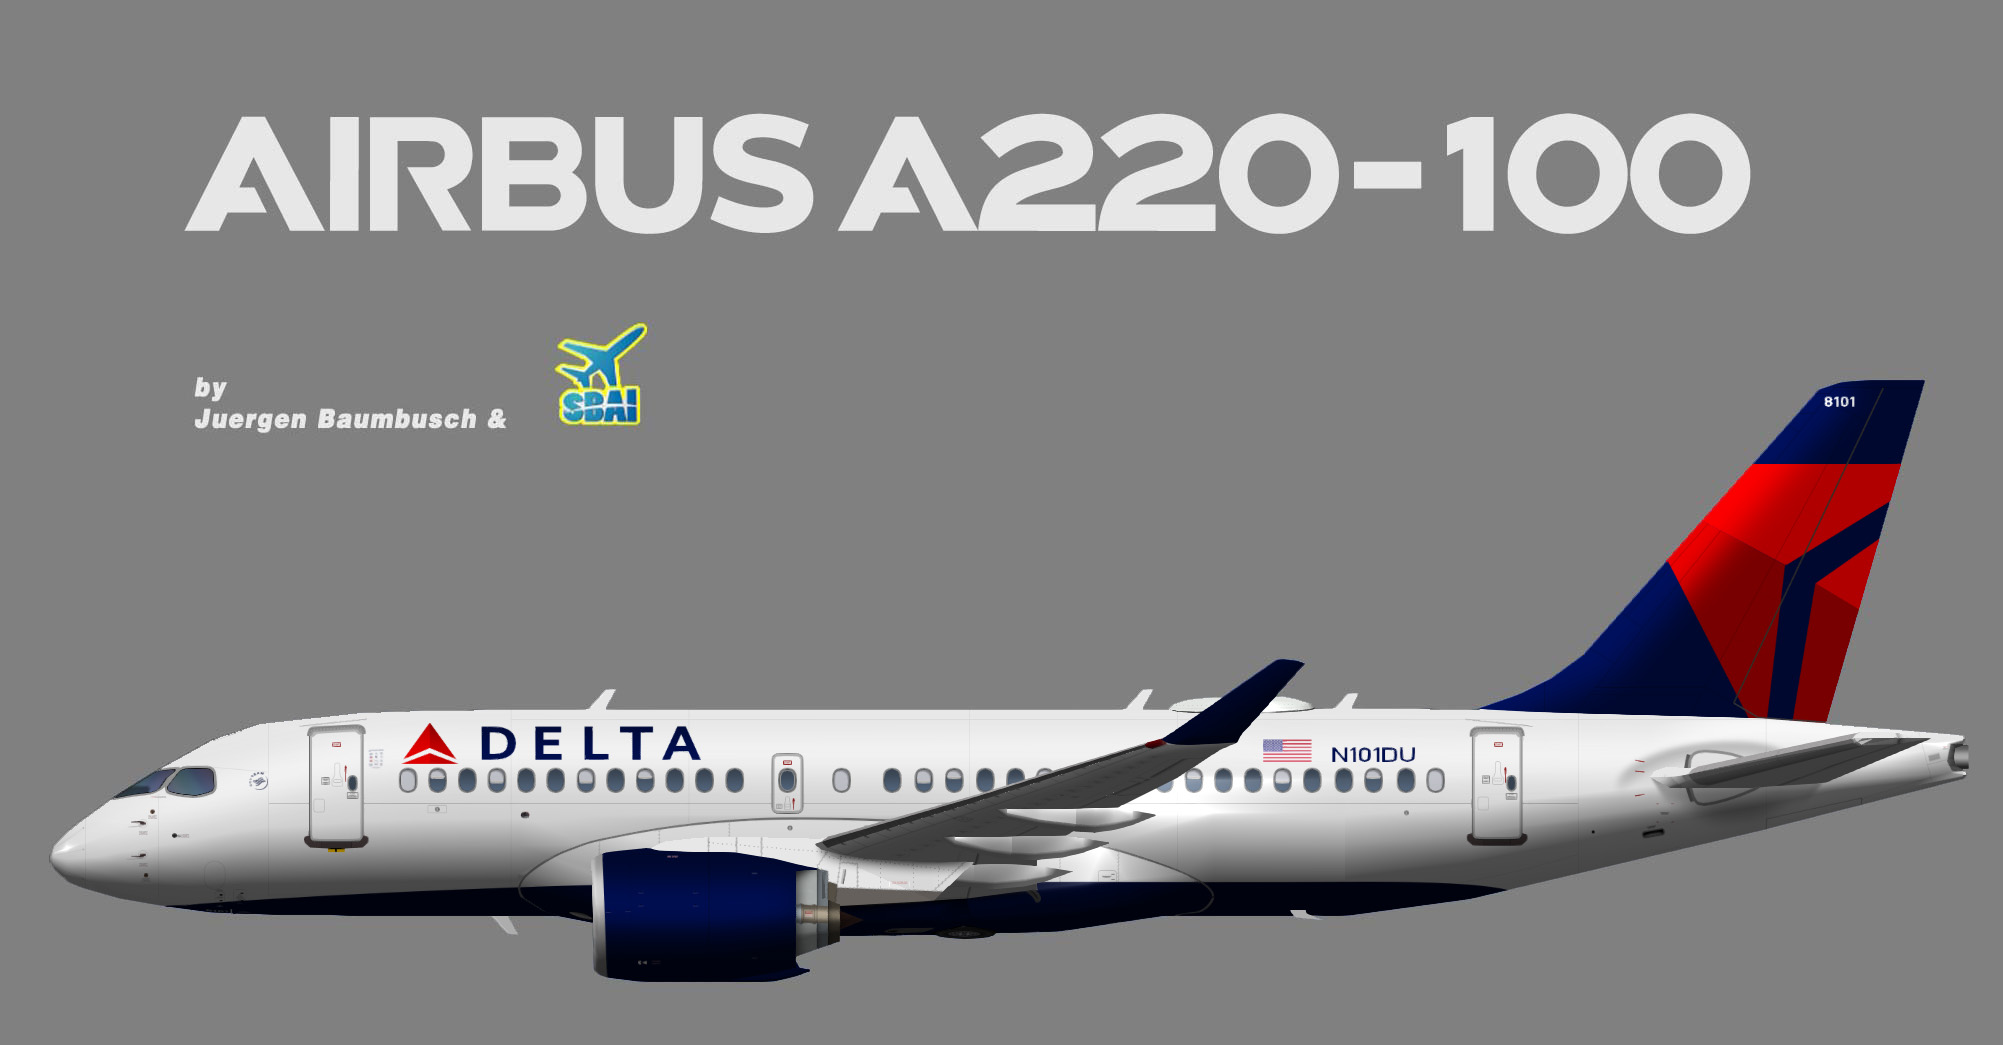 Delta air lines Airbus A220-100 (SBAI)